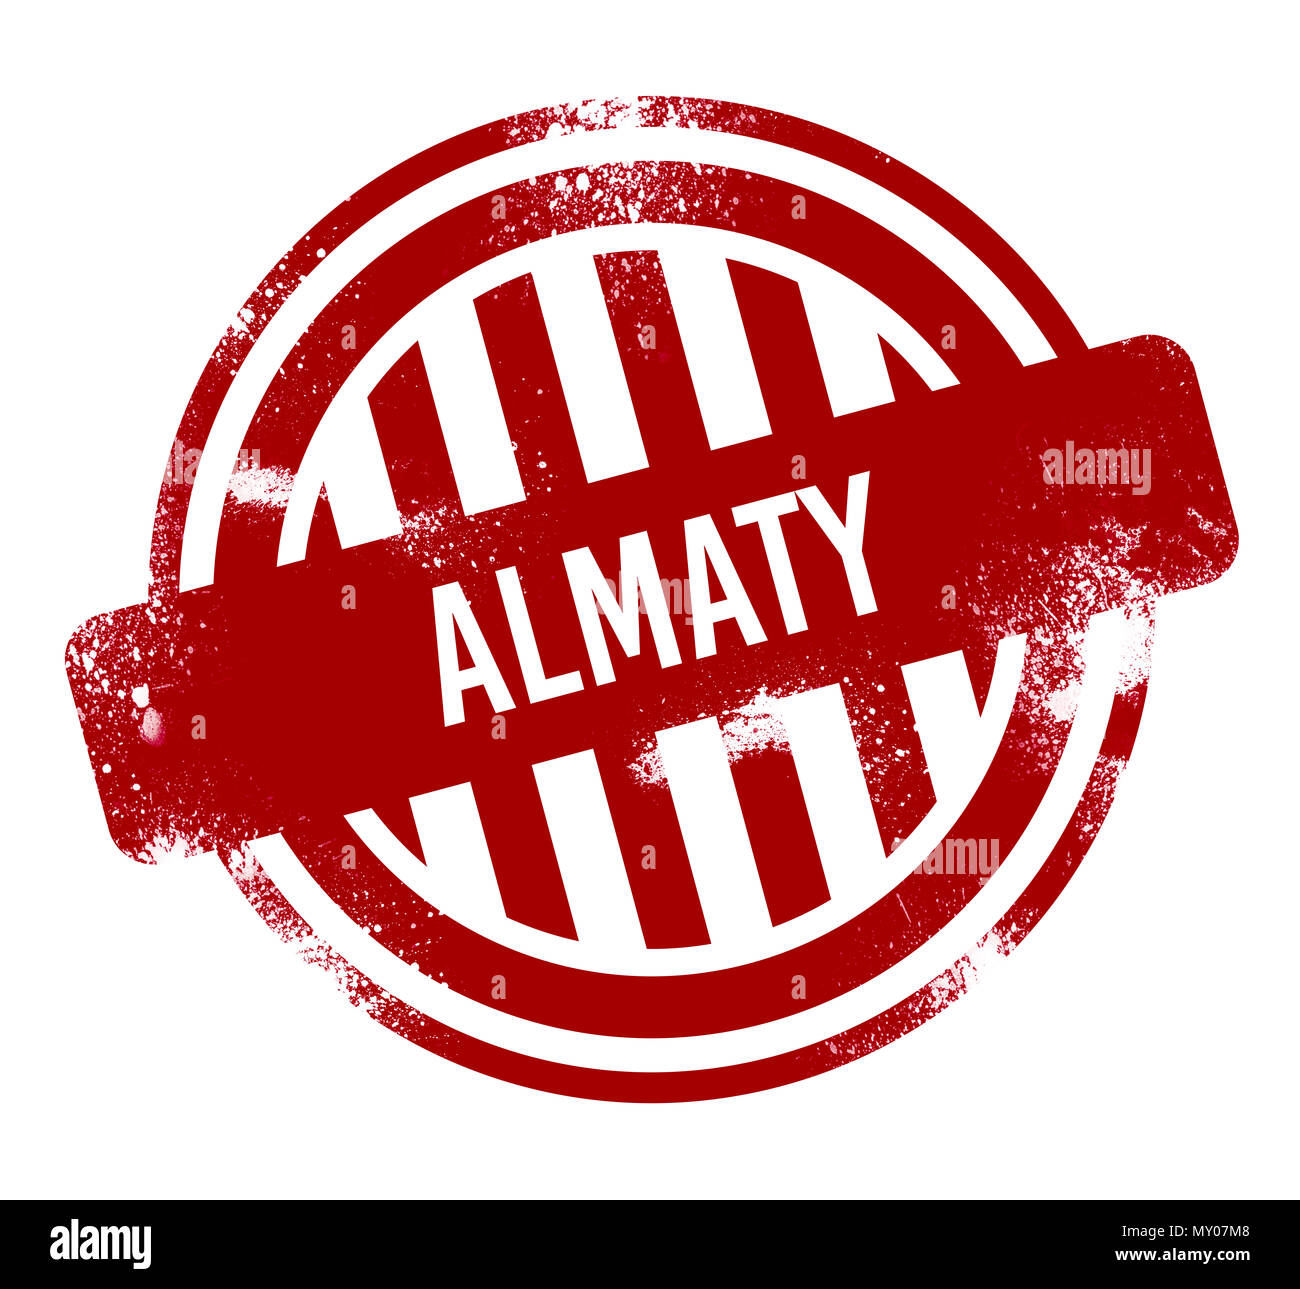 Almaty - Rosso pulsante grunge, timbro Foto Stock